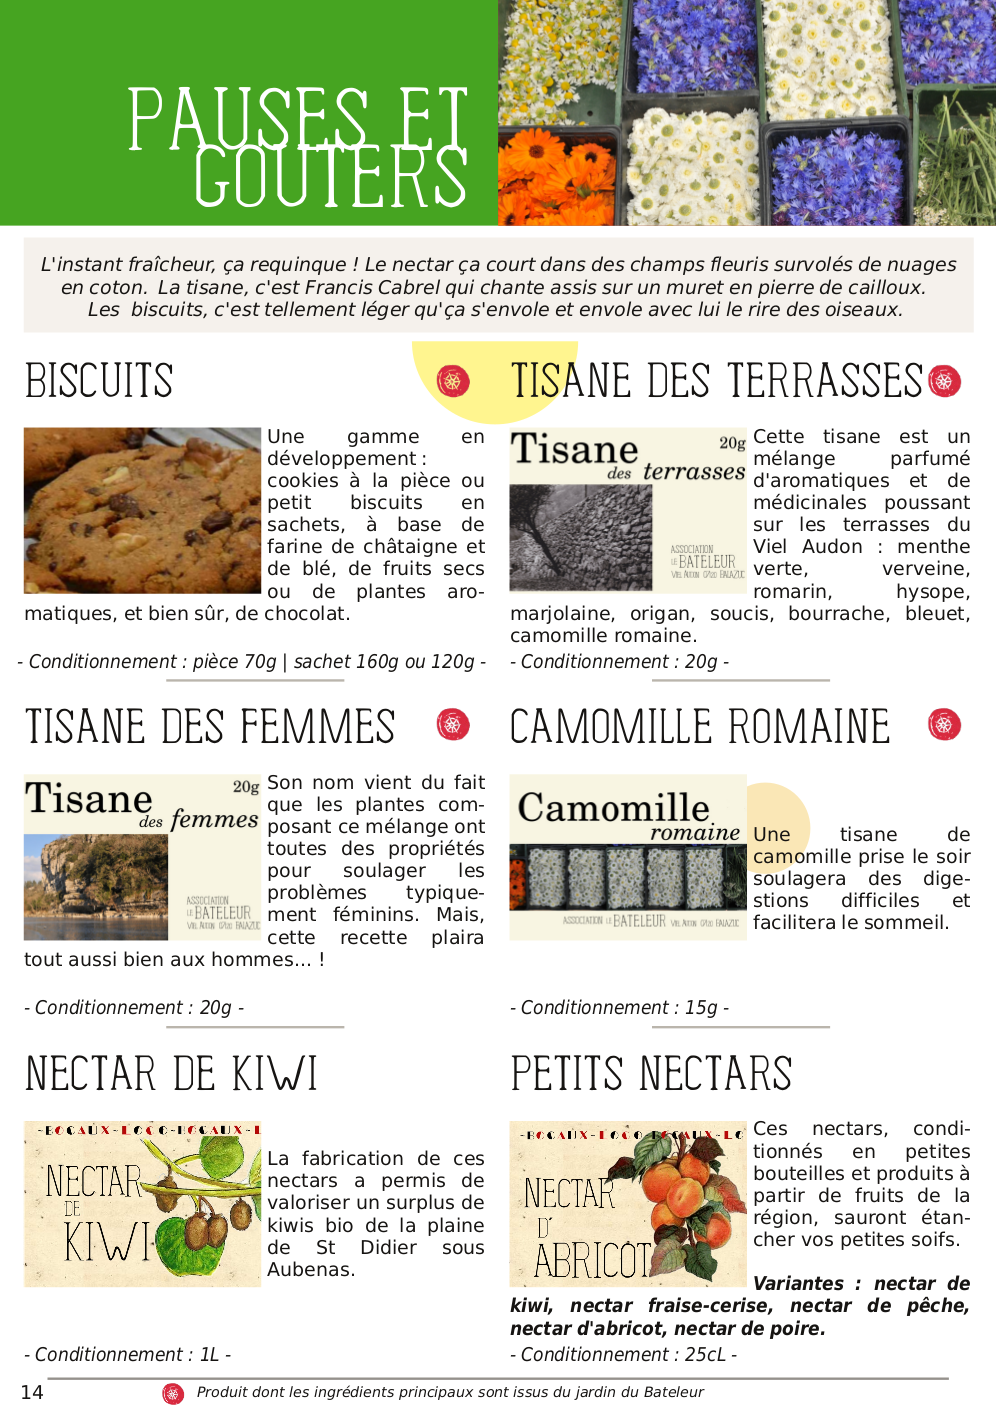 Catalogue du Bateleur - Page de présentation de produits